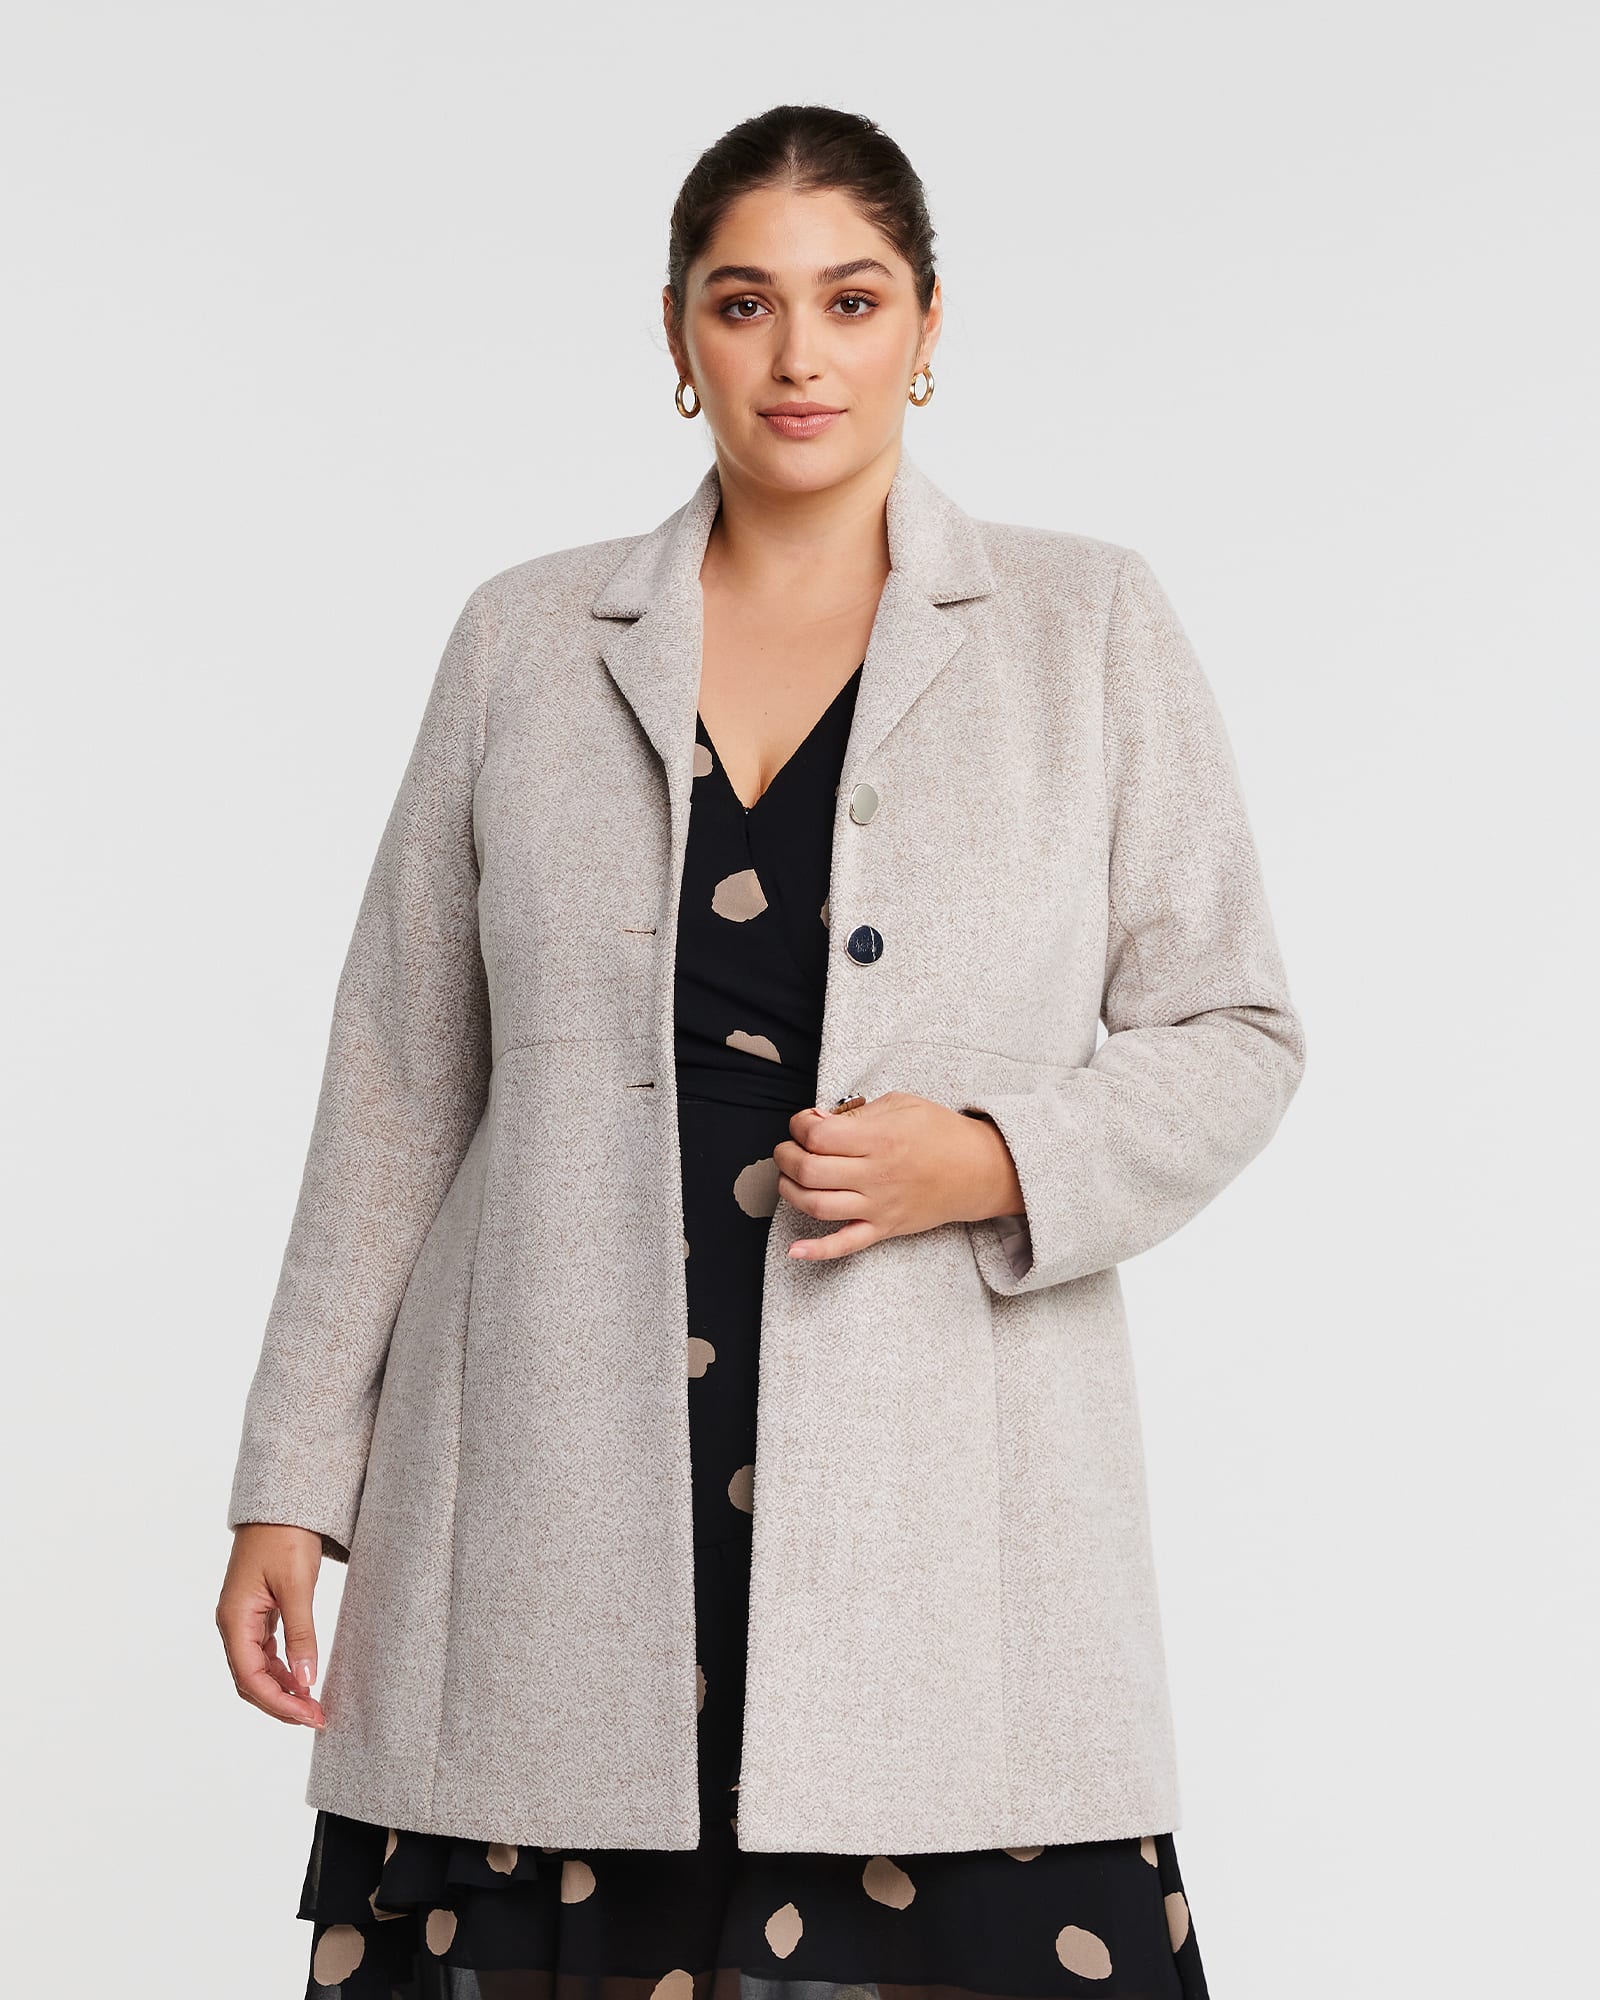 Fall Coats For Women